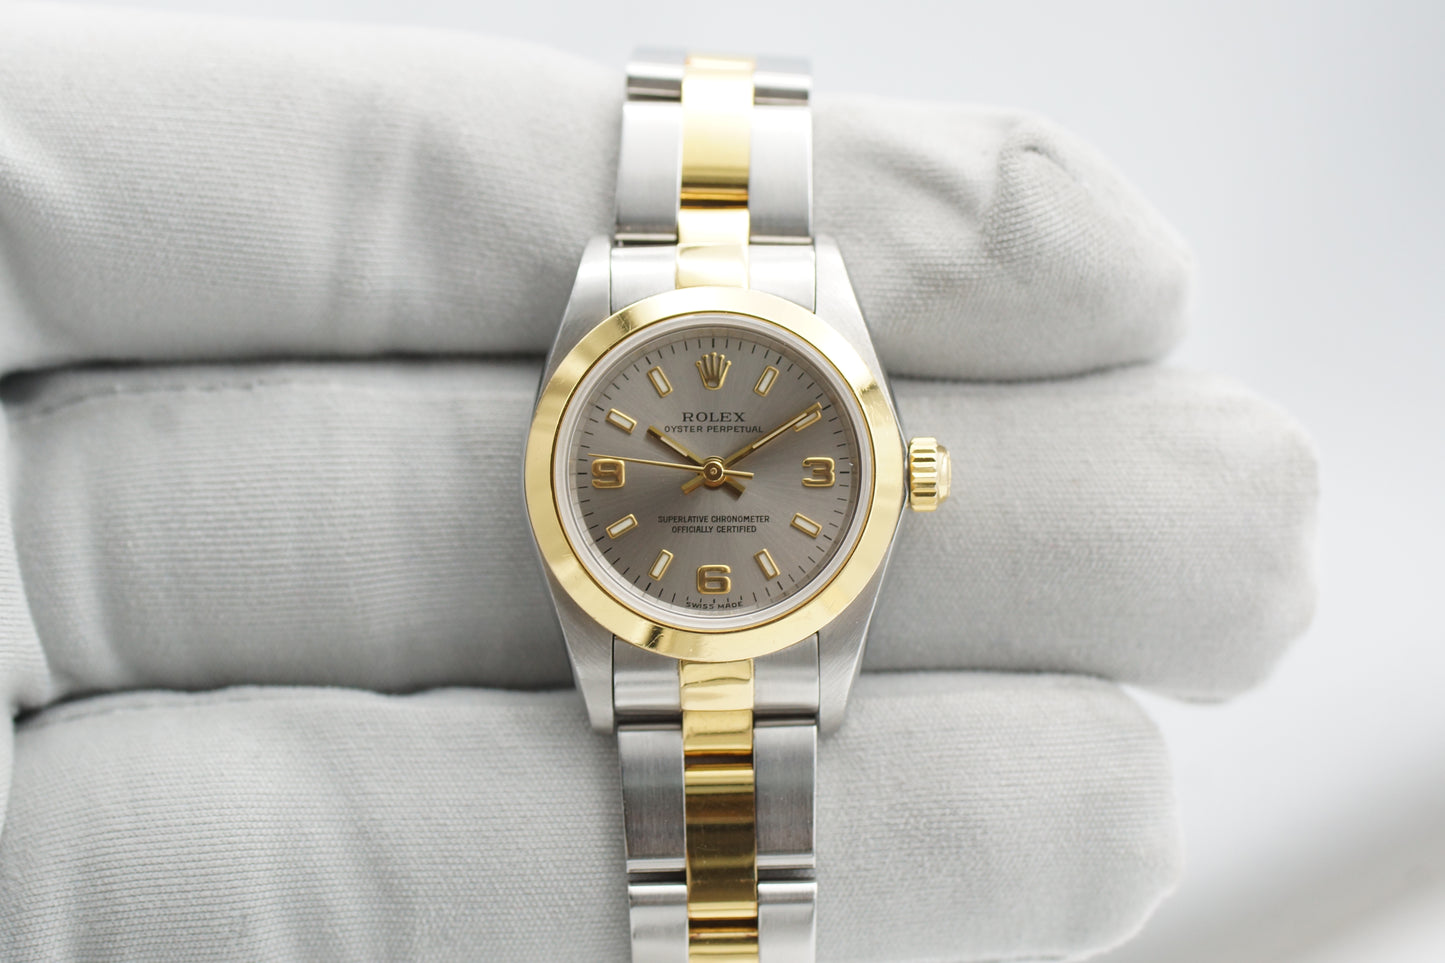 Rolex Oyster Perpetual 26 76183 Grau Gold/Stahl Box/Papiere 2000